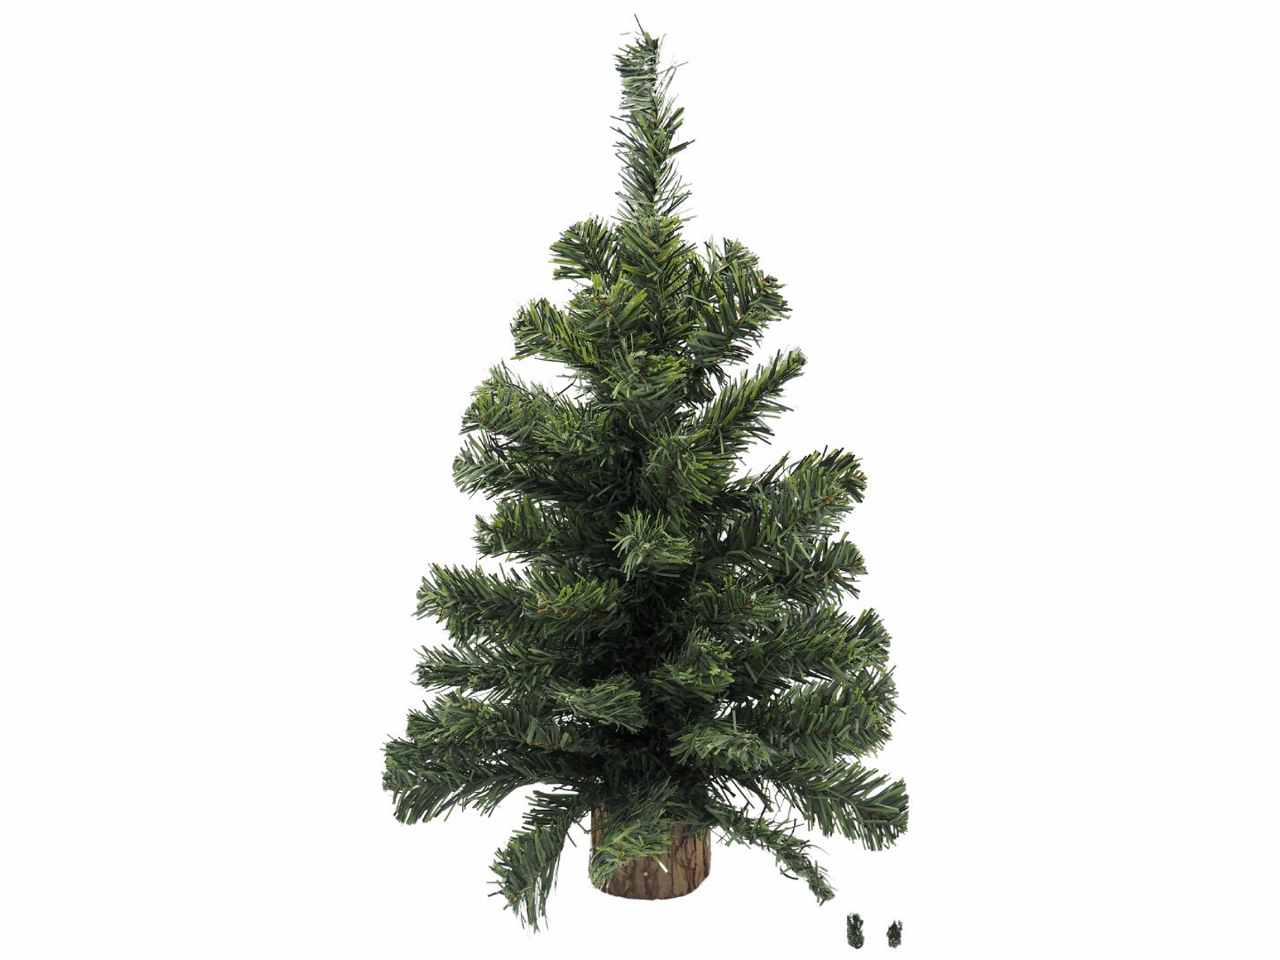 Albero di natale pino misura h.54cm con base misura d.7,5x5cm in legno con 64 tipsx5cm